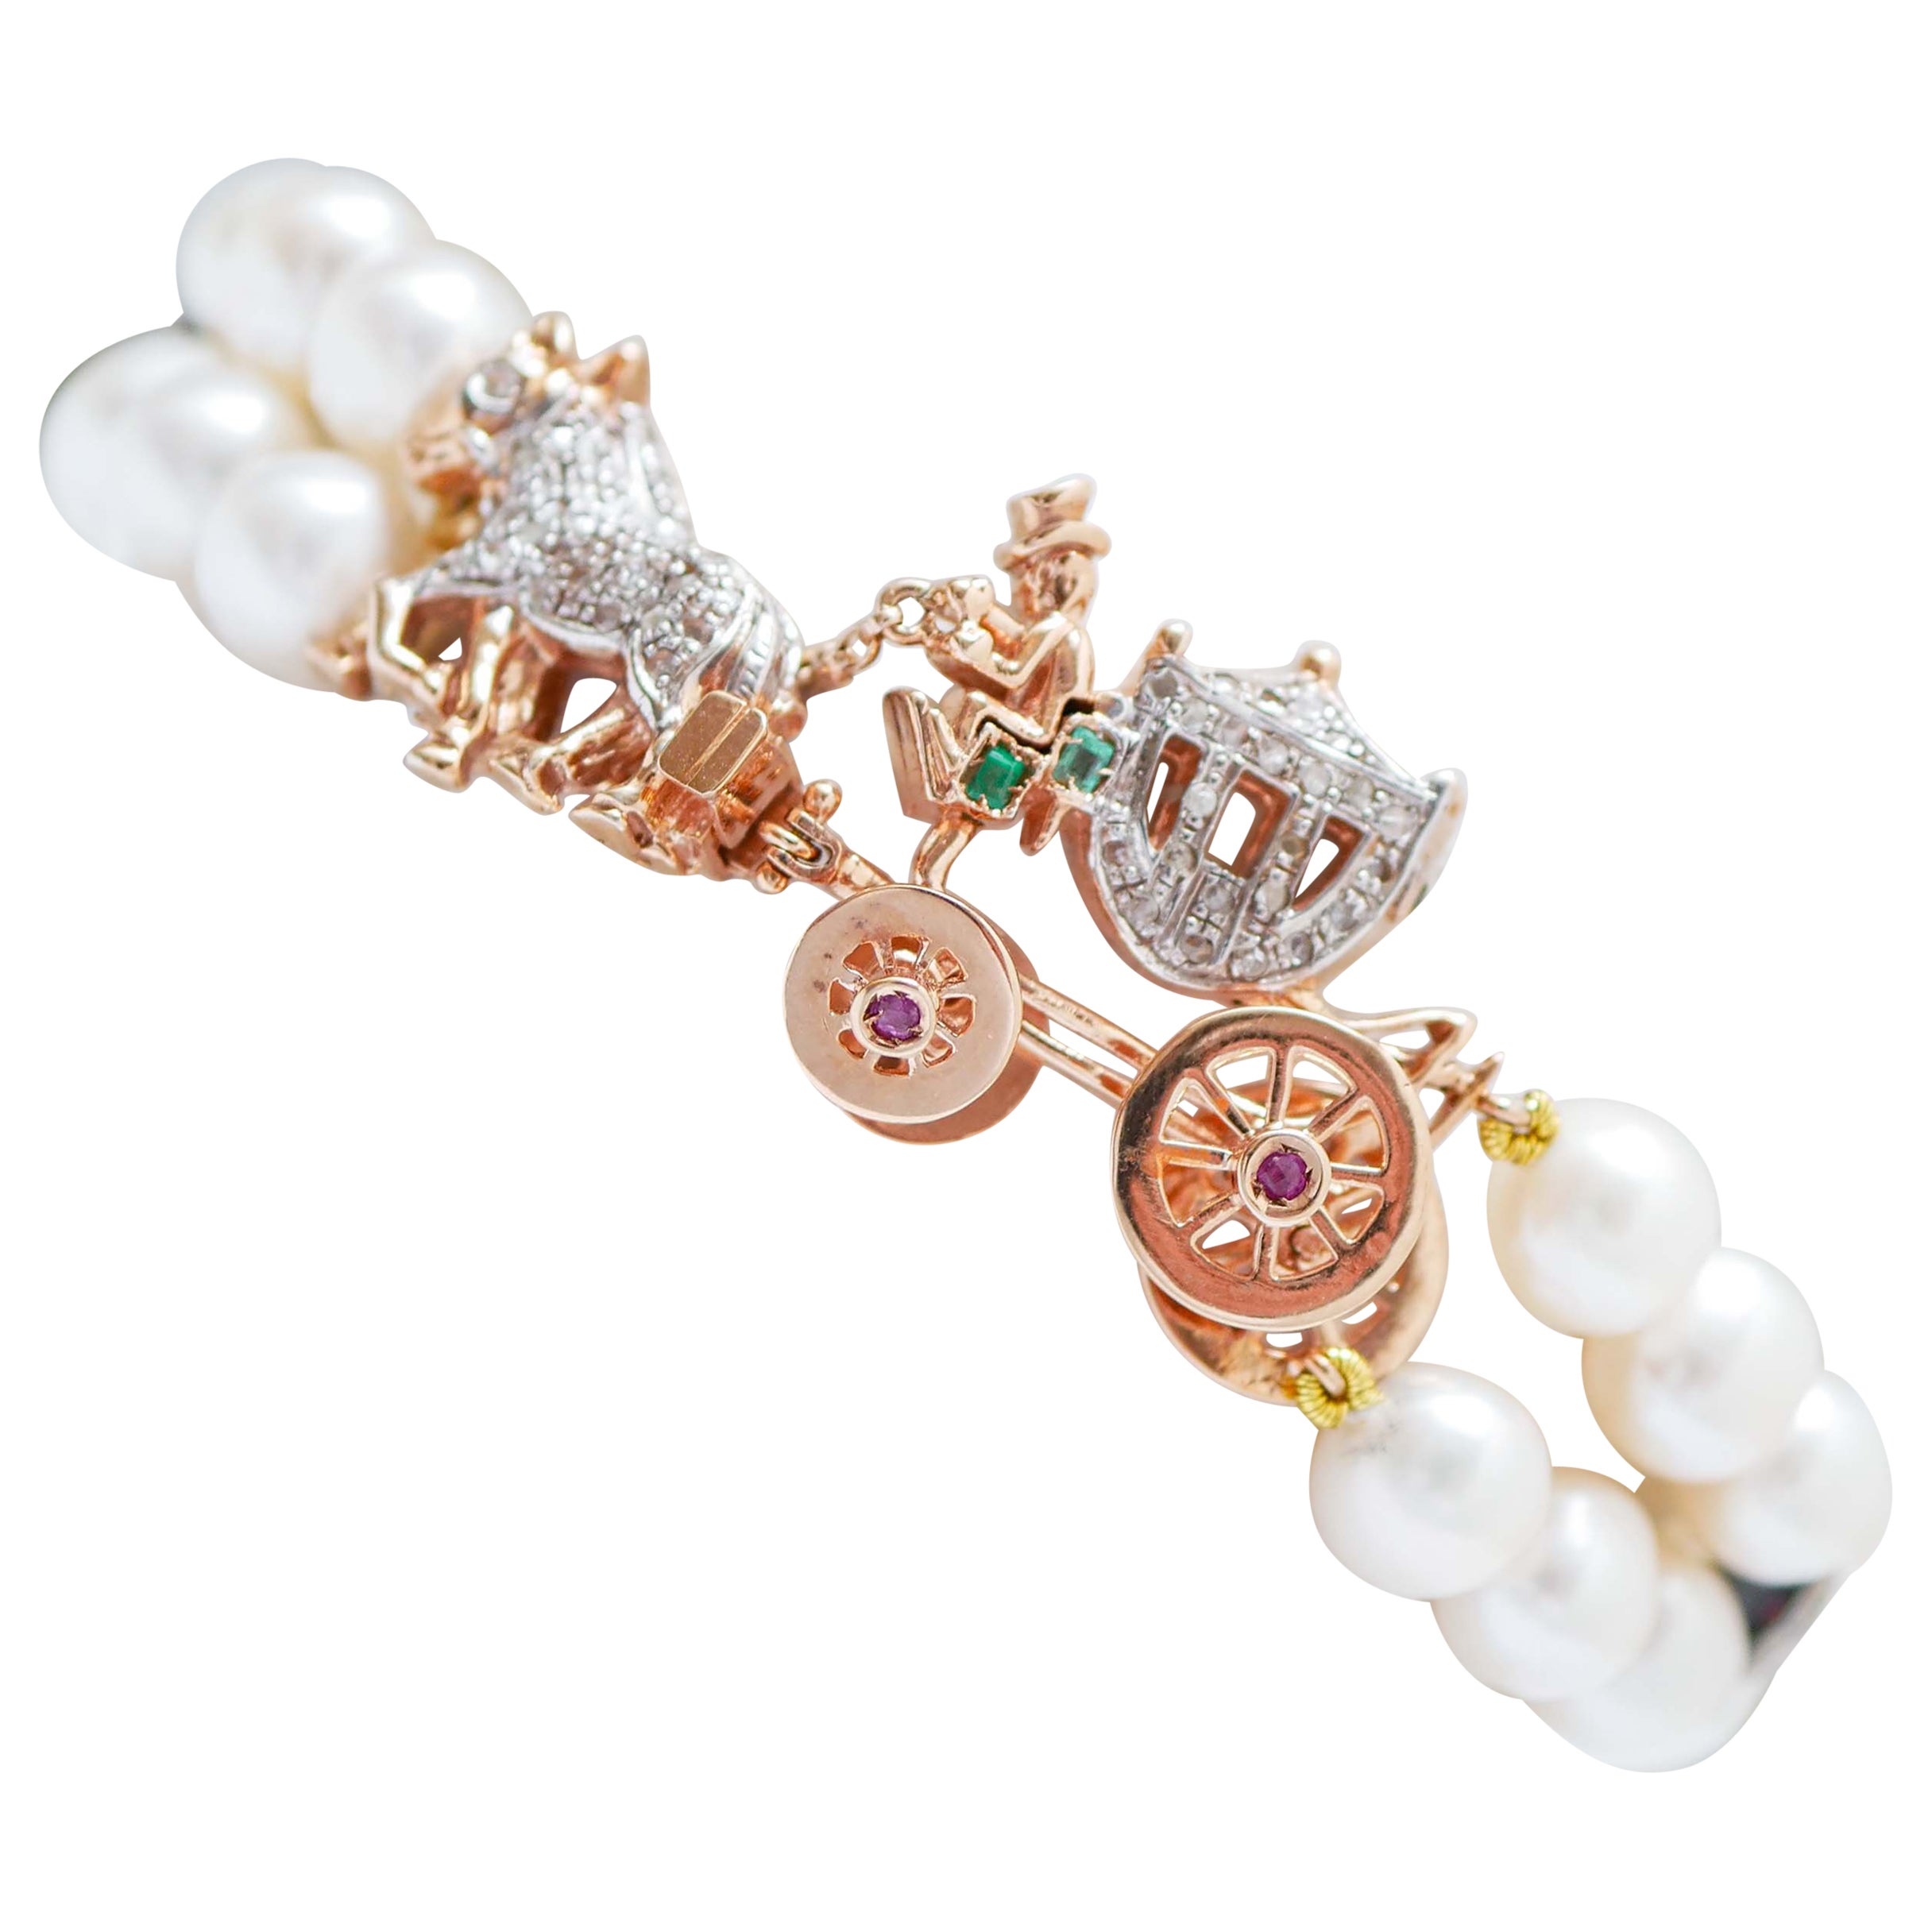 Reisearmband aus Roségold und Silber mit Perlen, Rubinen, Smaragden, Diamanten